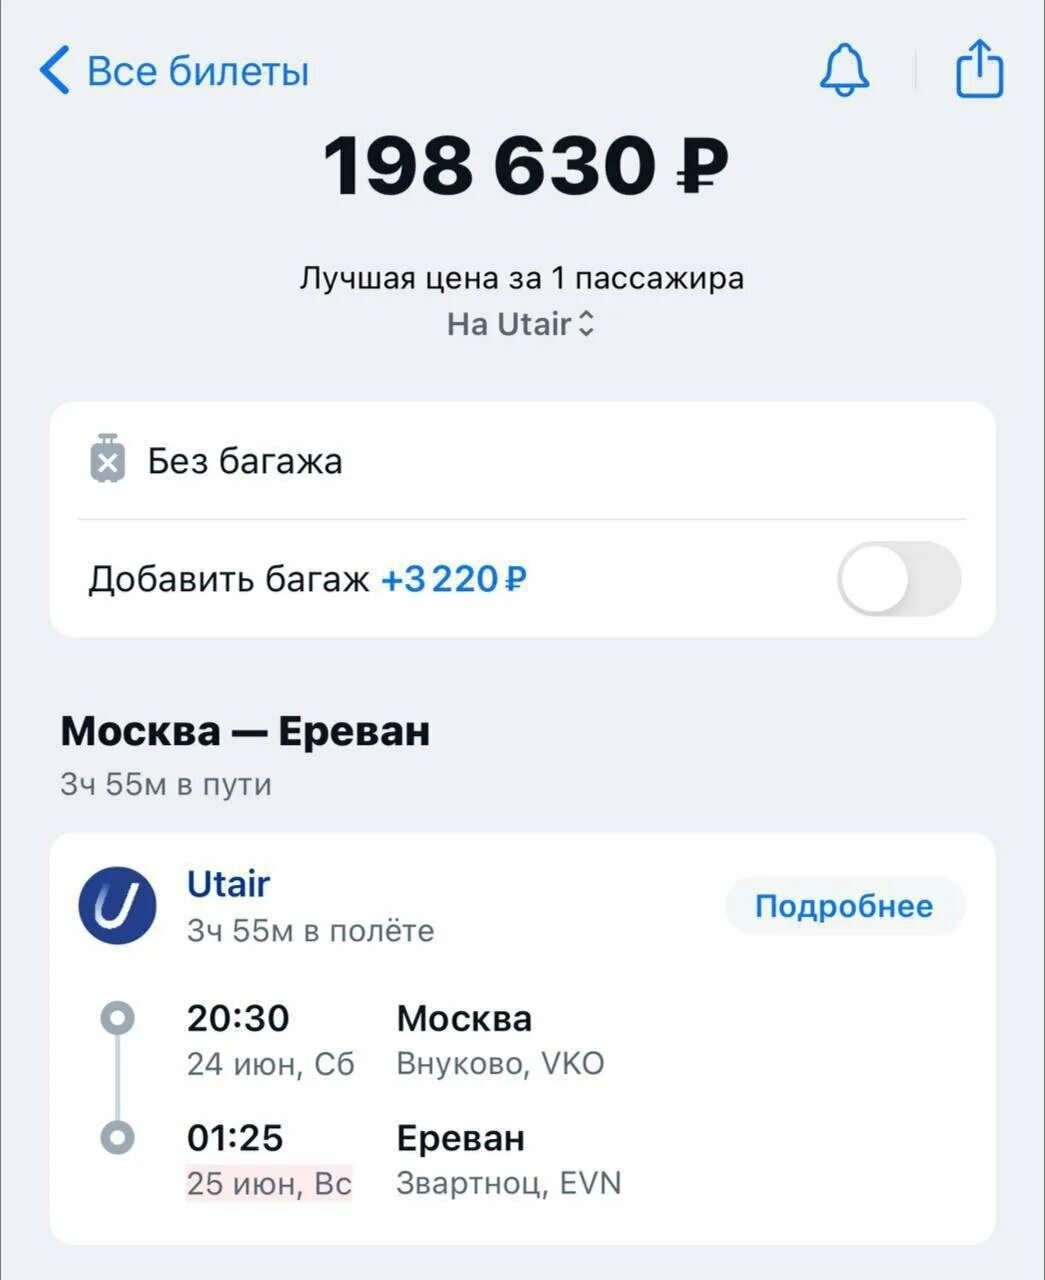 Сколько стоит билет то. Билеты в Ереван из Москвы. Билет сколько стоит. Билет в Ереван на самолет. Повышение цен на билеты на самолет.